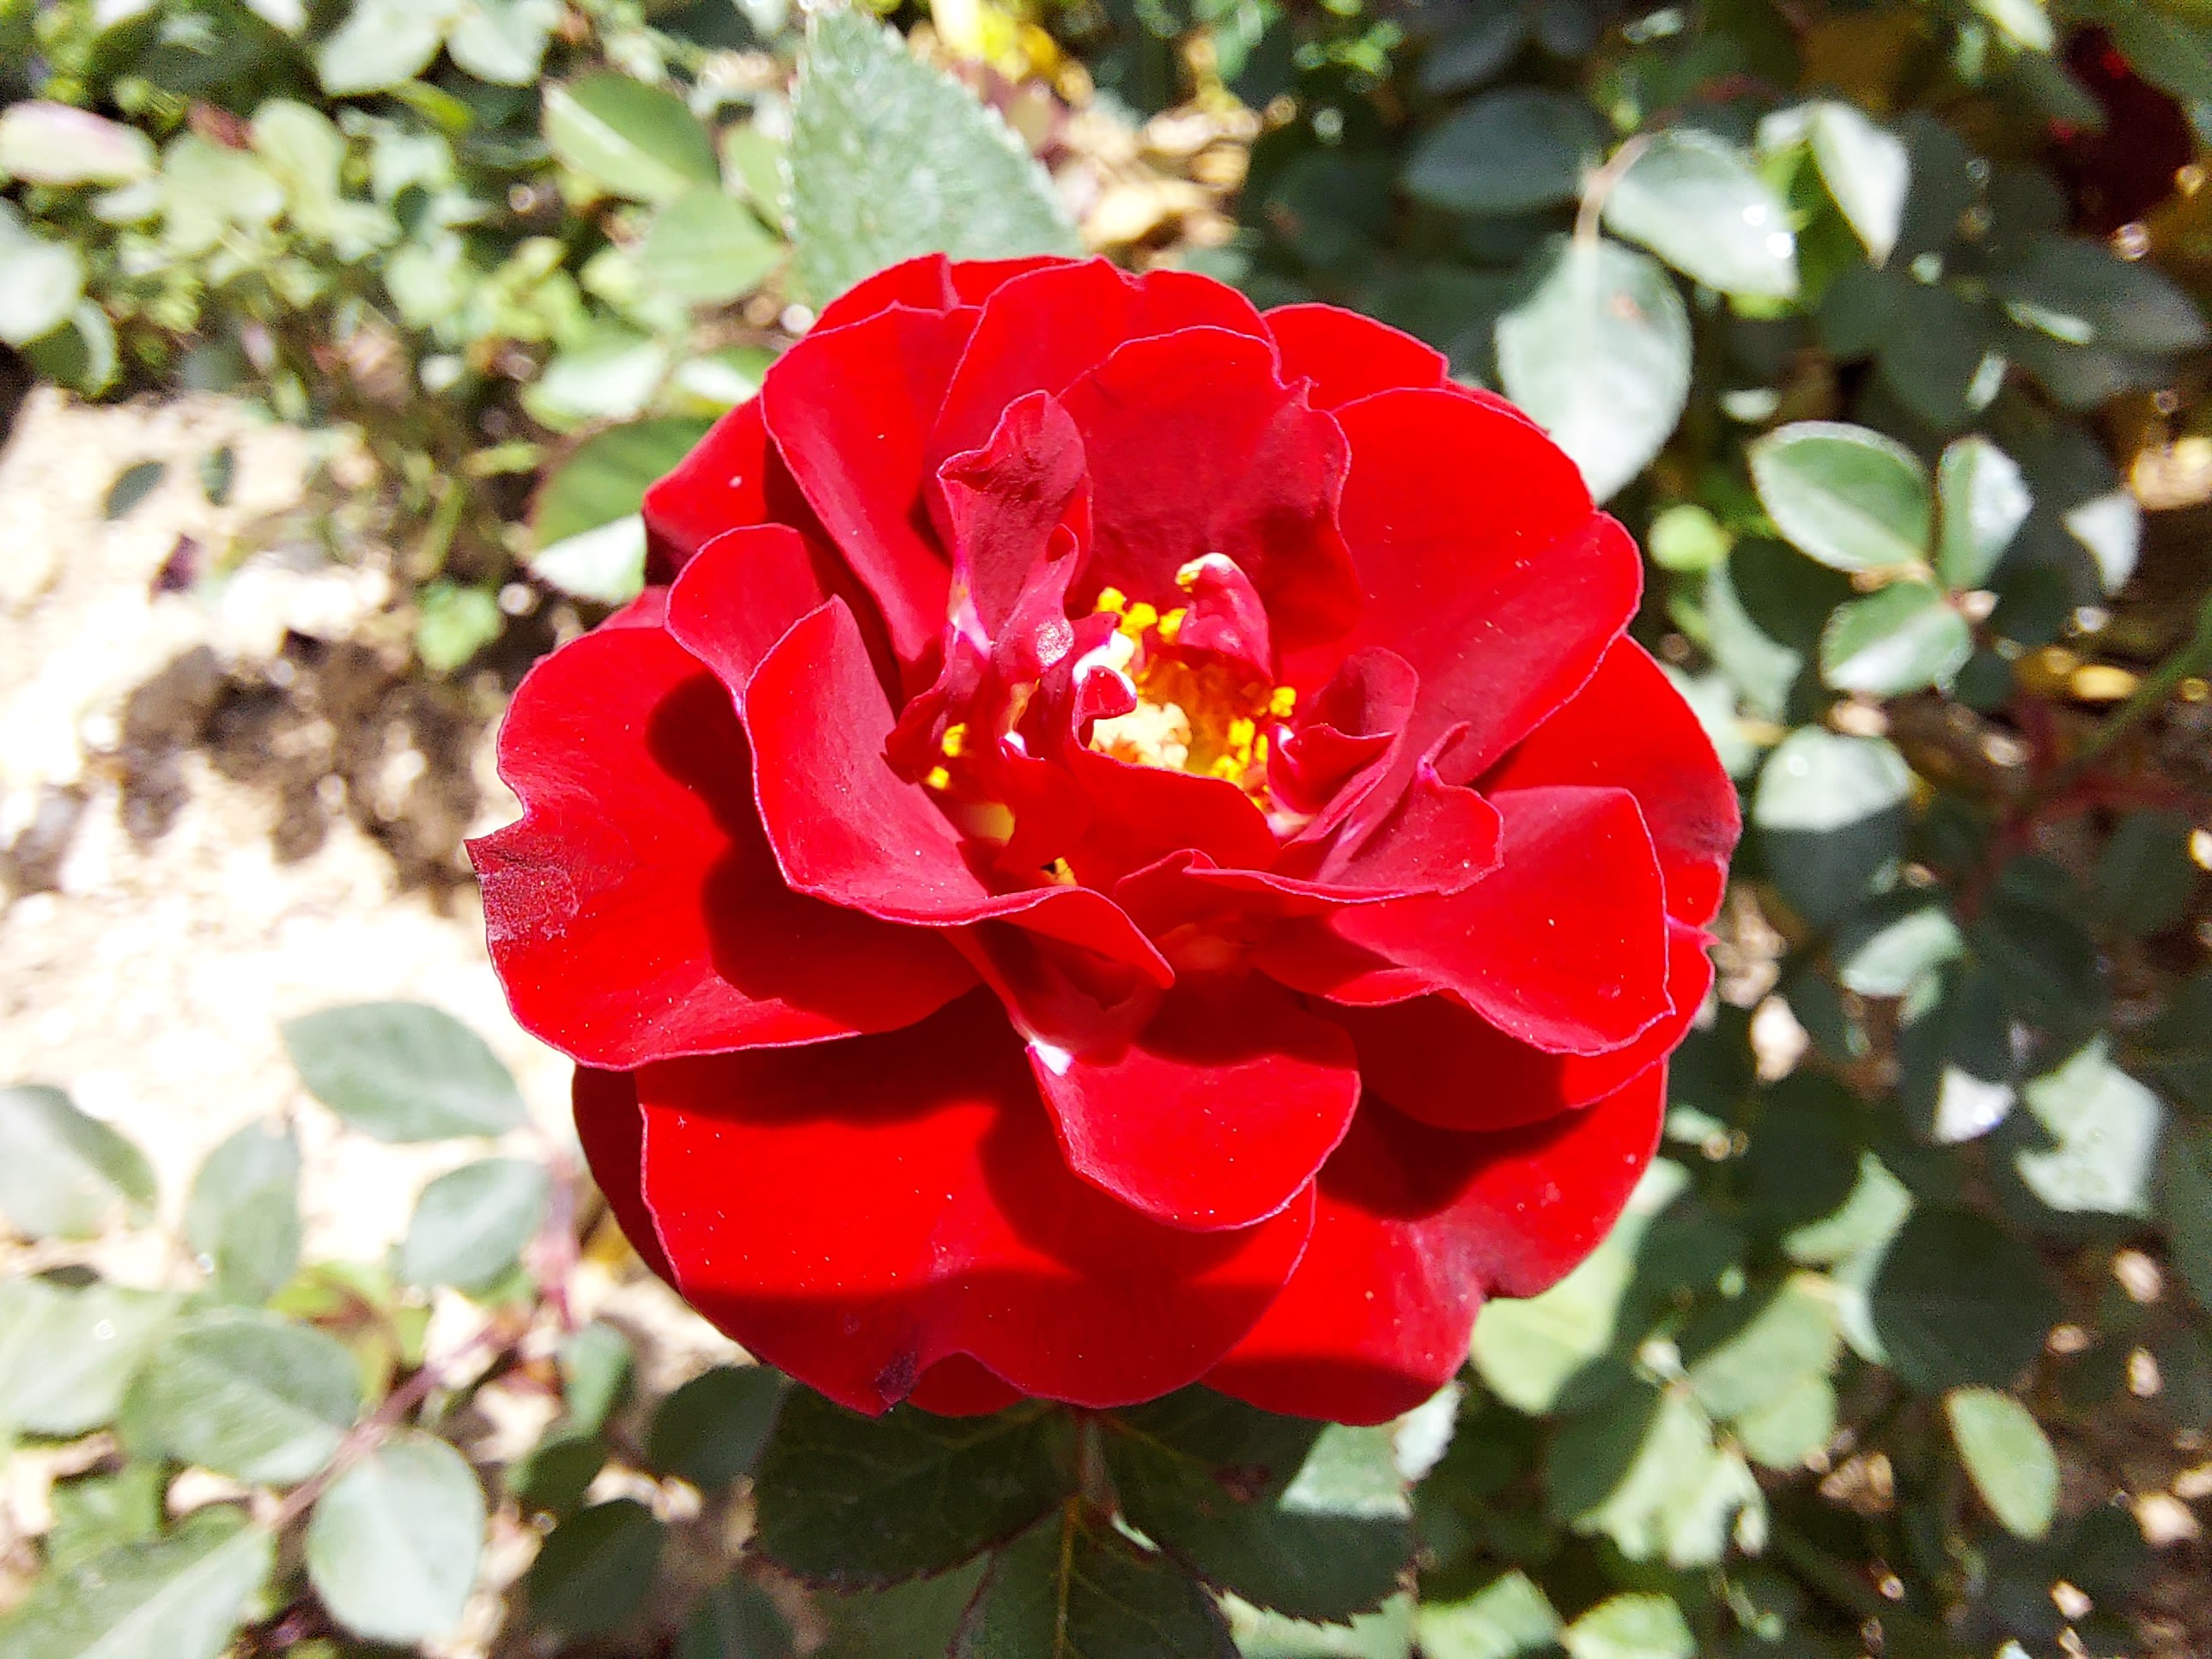 عکس نمونه ماکرو گلکسی M51 سامسونگ - نمای نزدیک از یک گل به رنگ قرمز